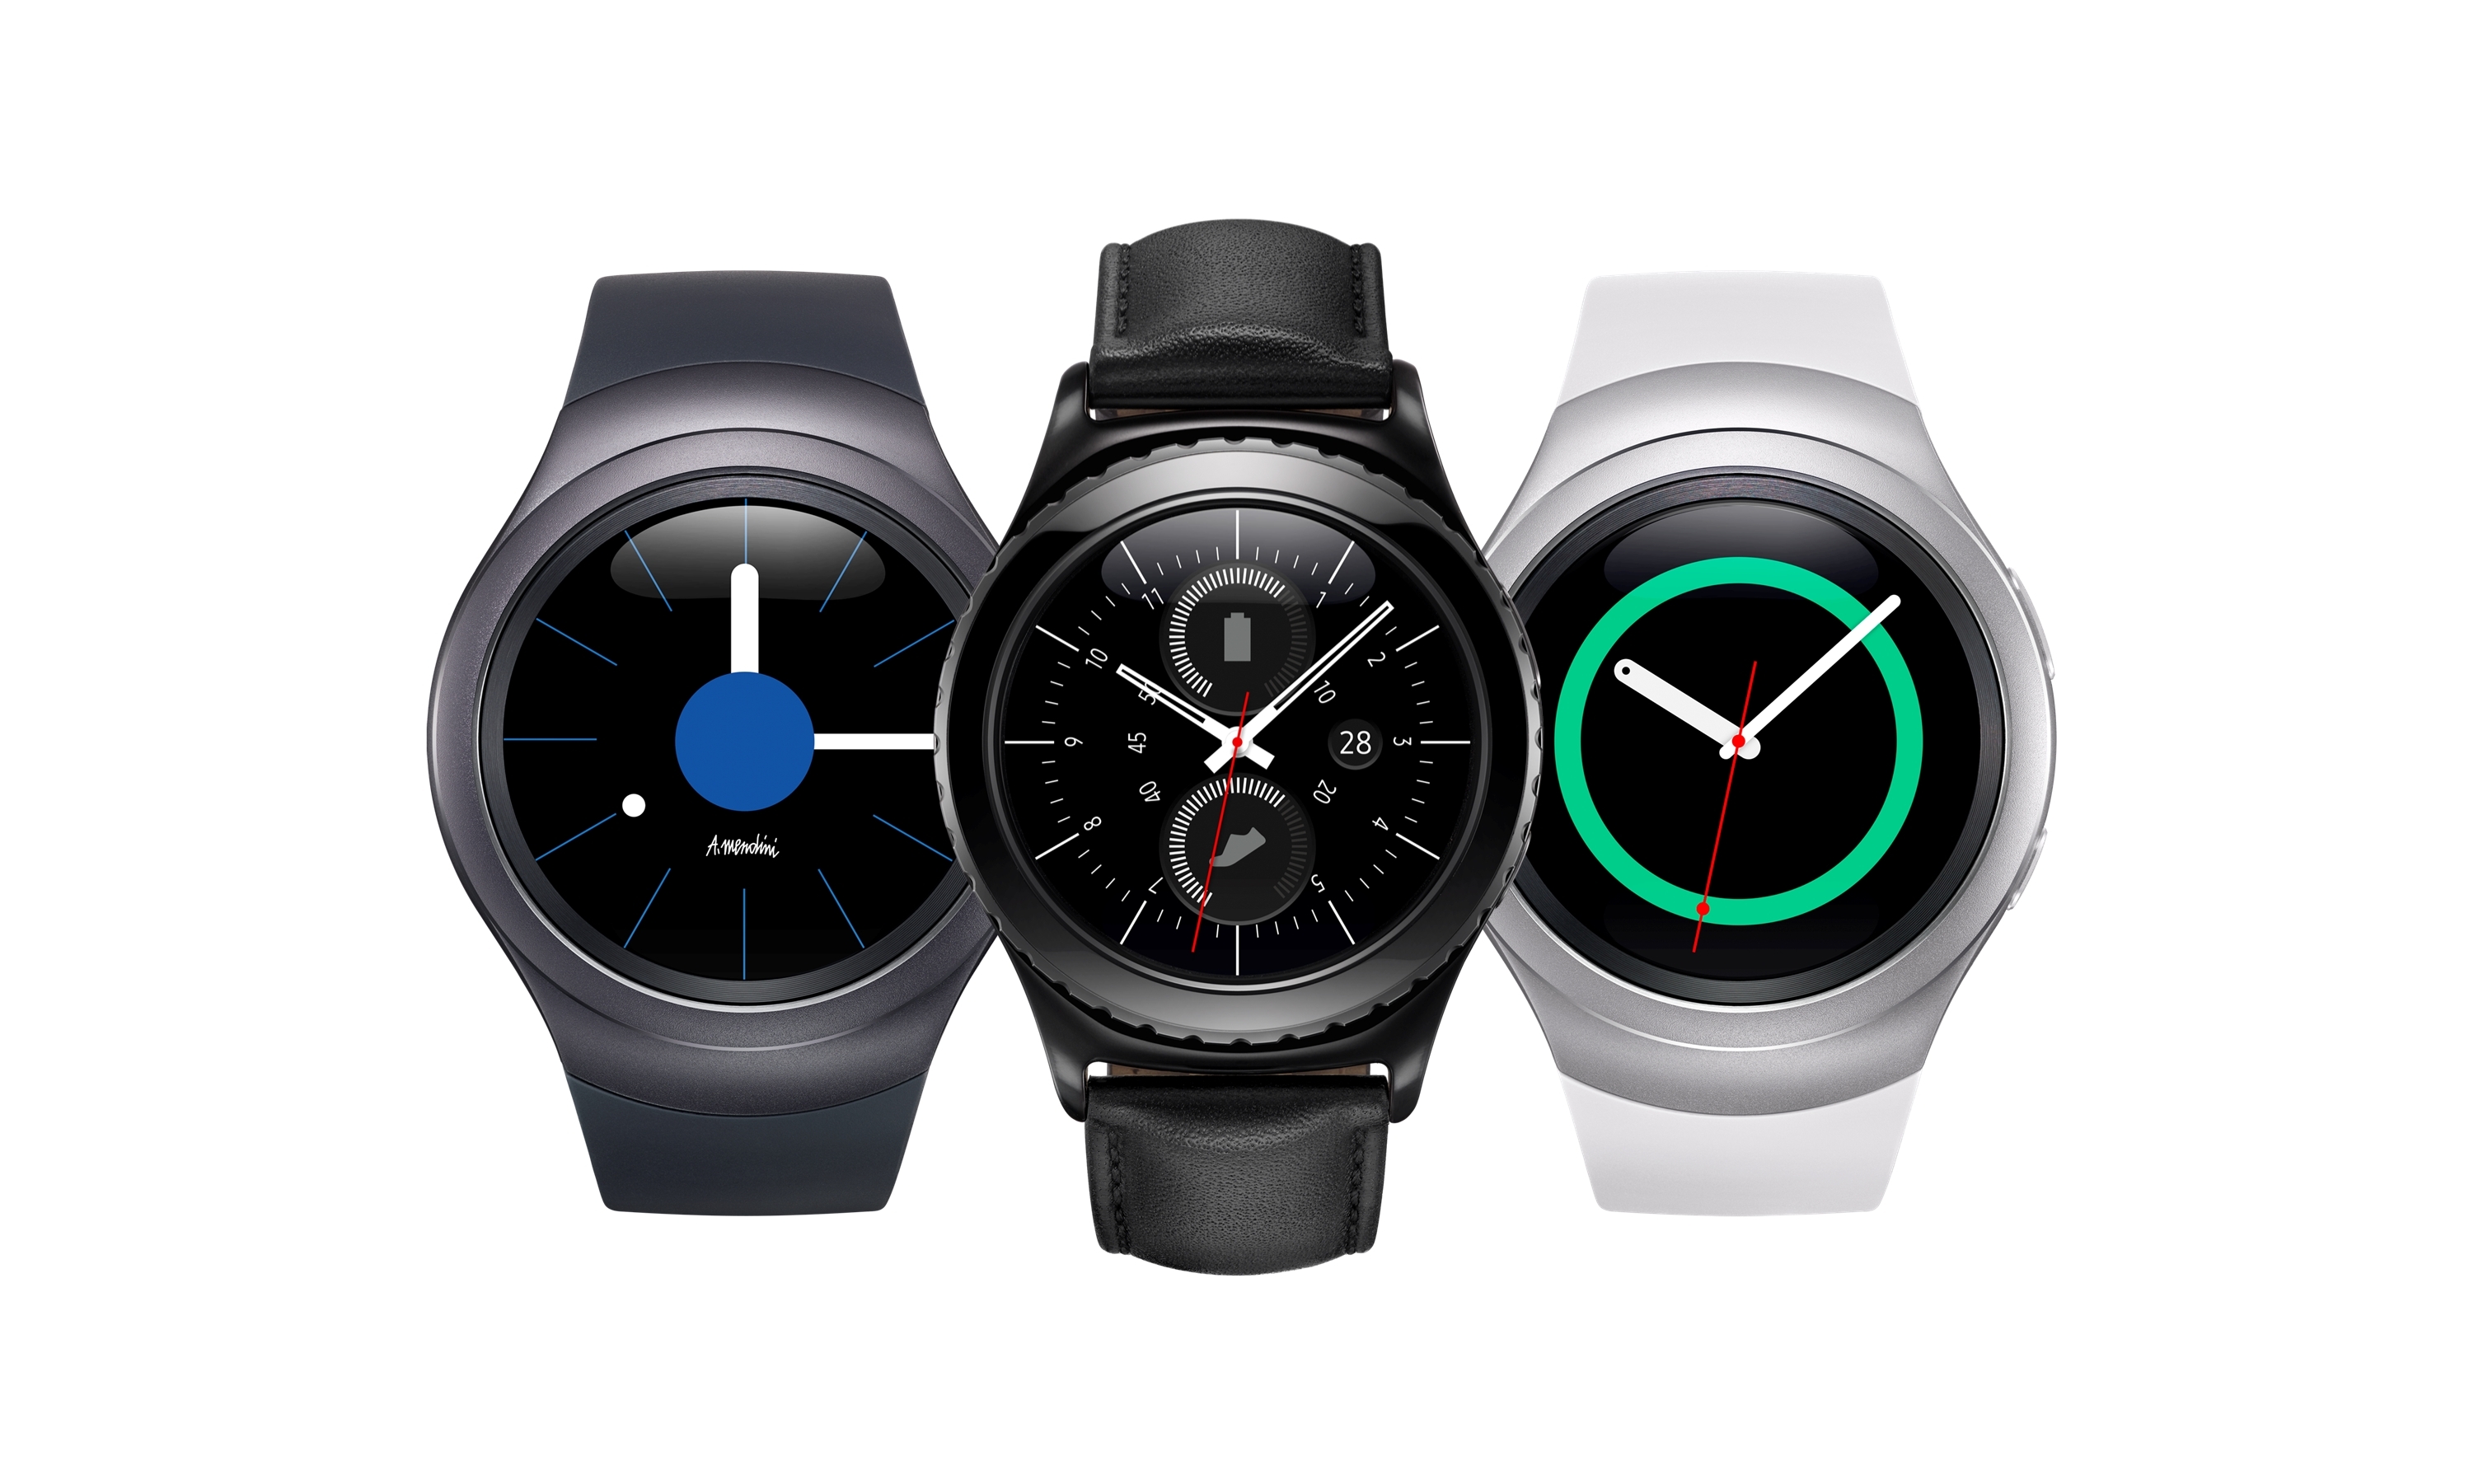 Круглые смарт-часы Samsung Gear S2 выходят в продажу